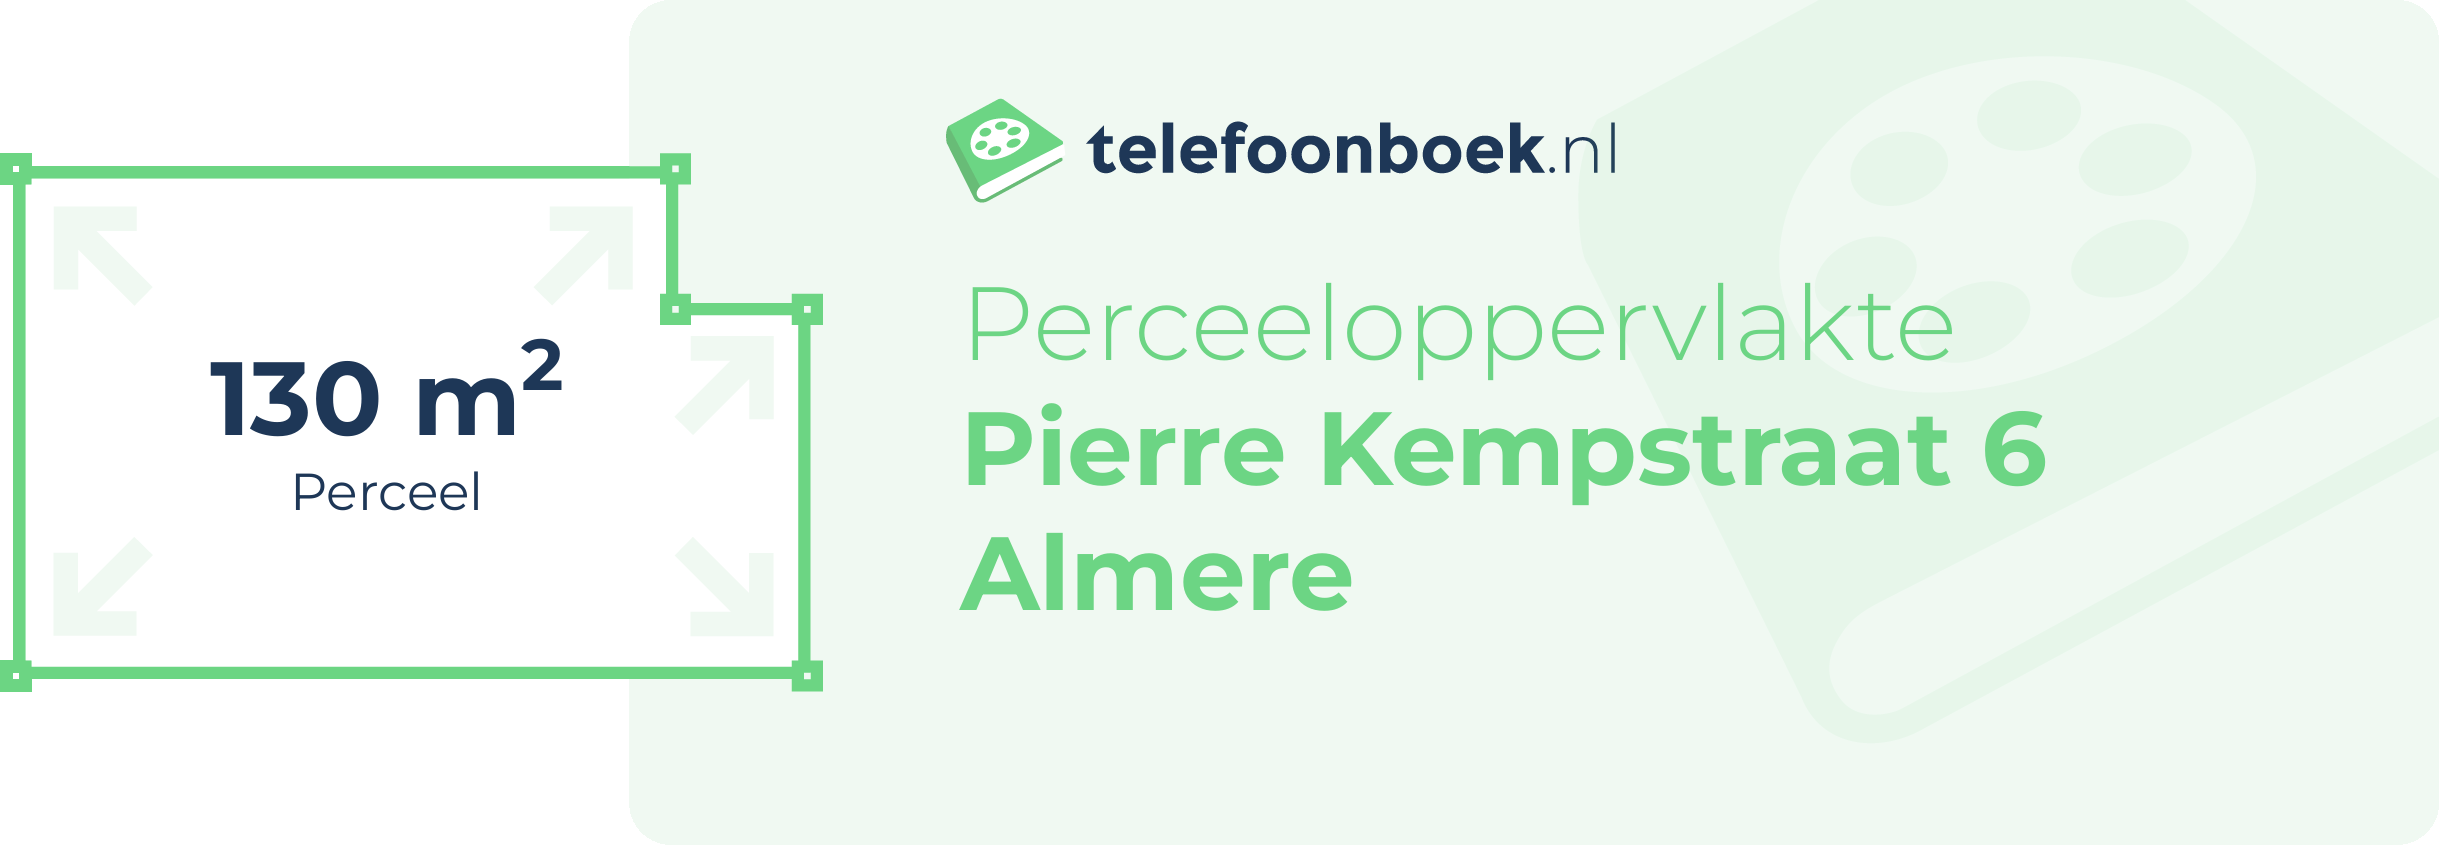 Perceeloppervlakte Pierre Kempstraat 6 Almere